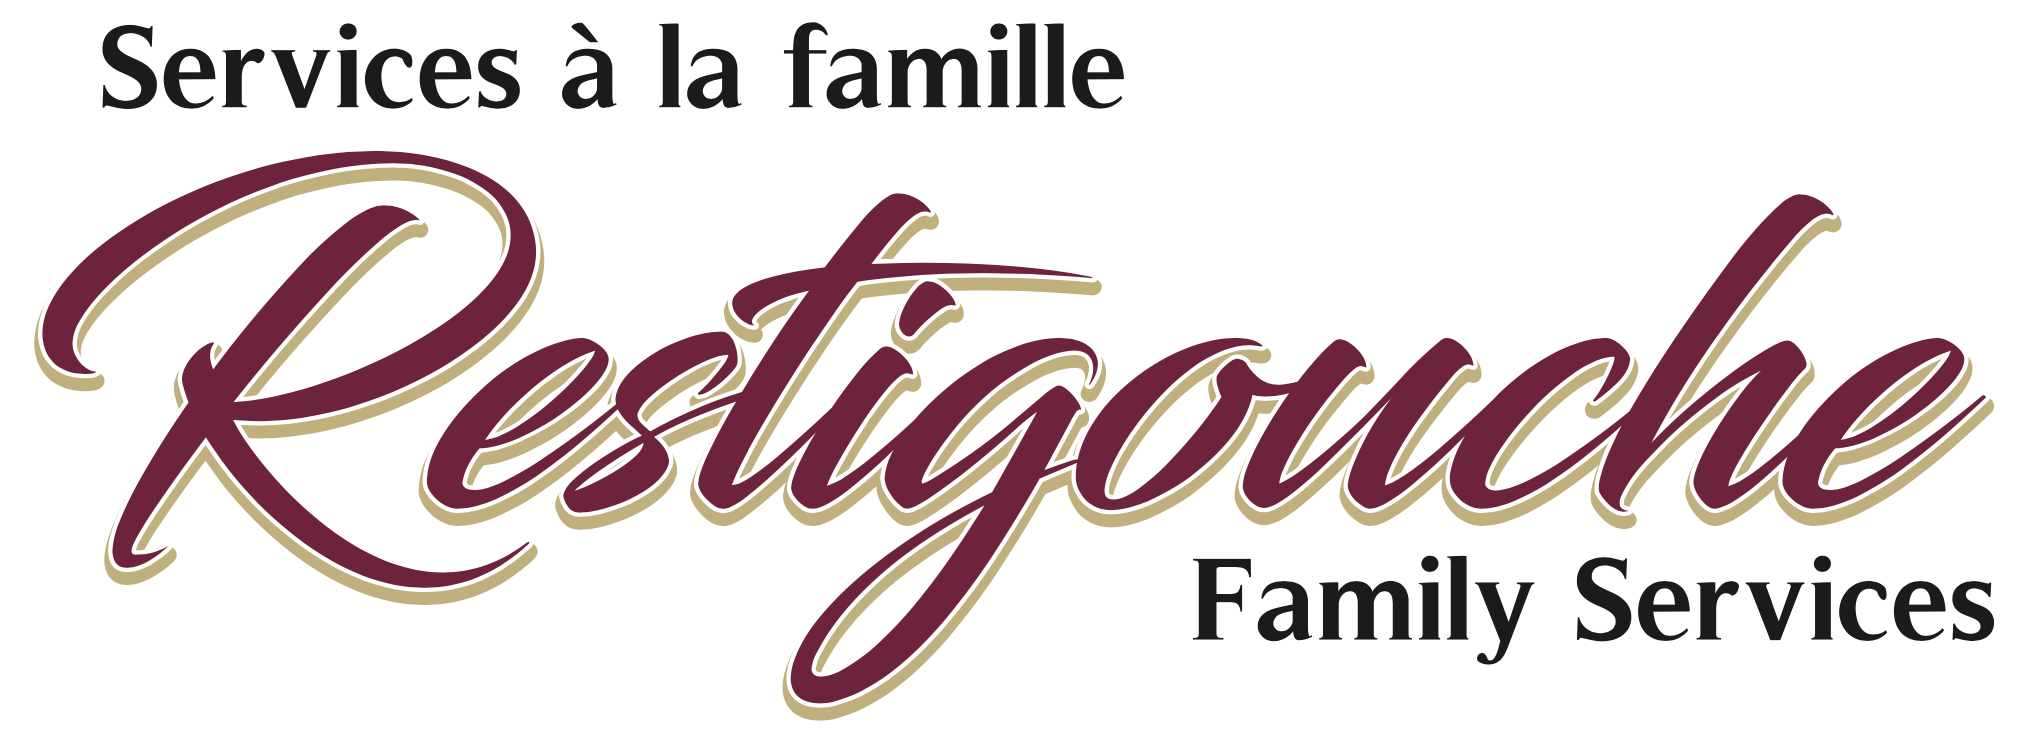 Restigouche Family Services